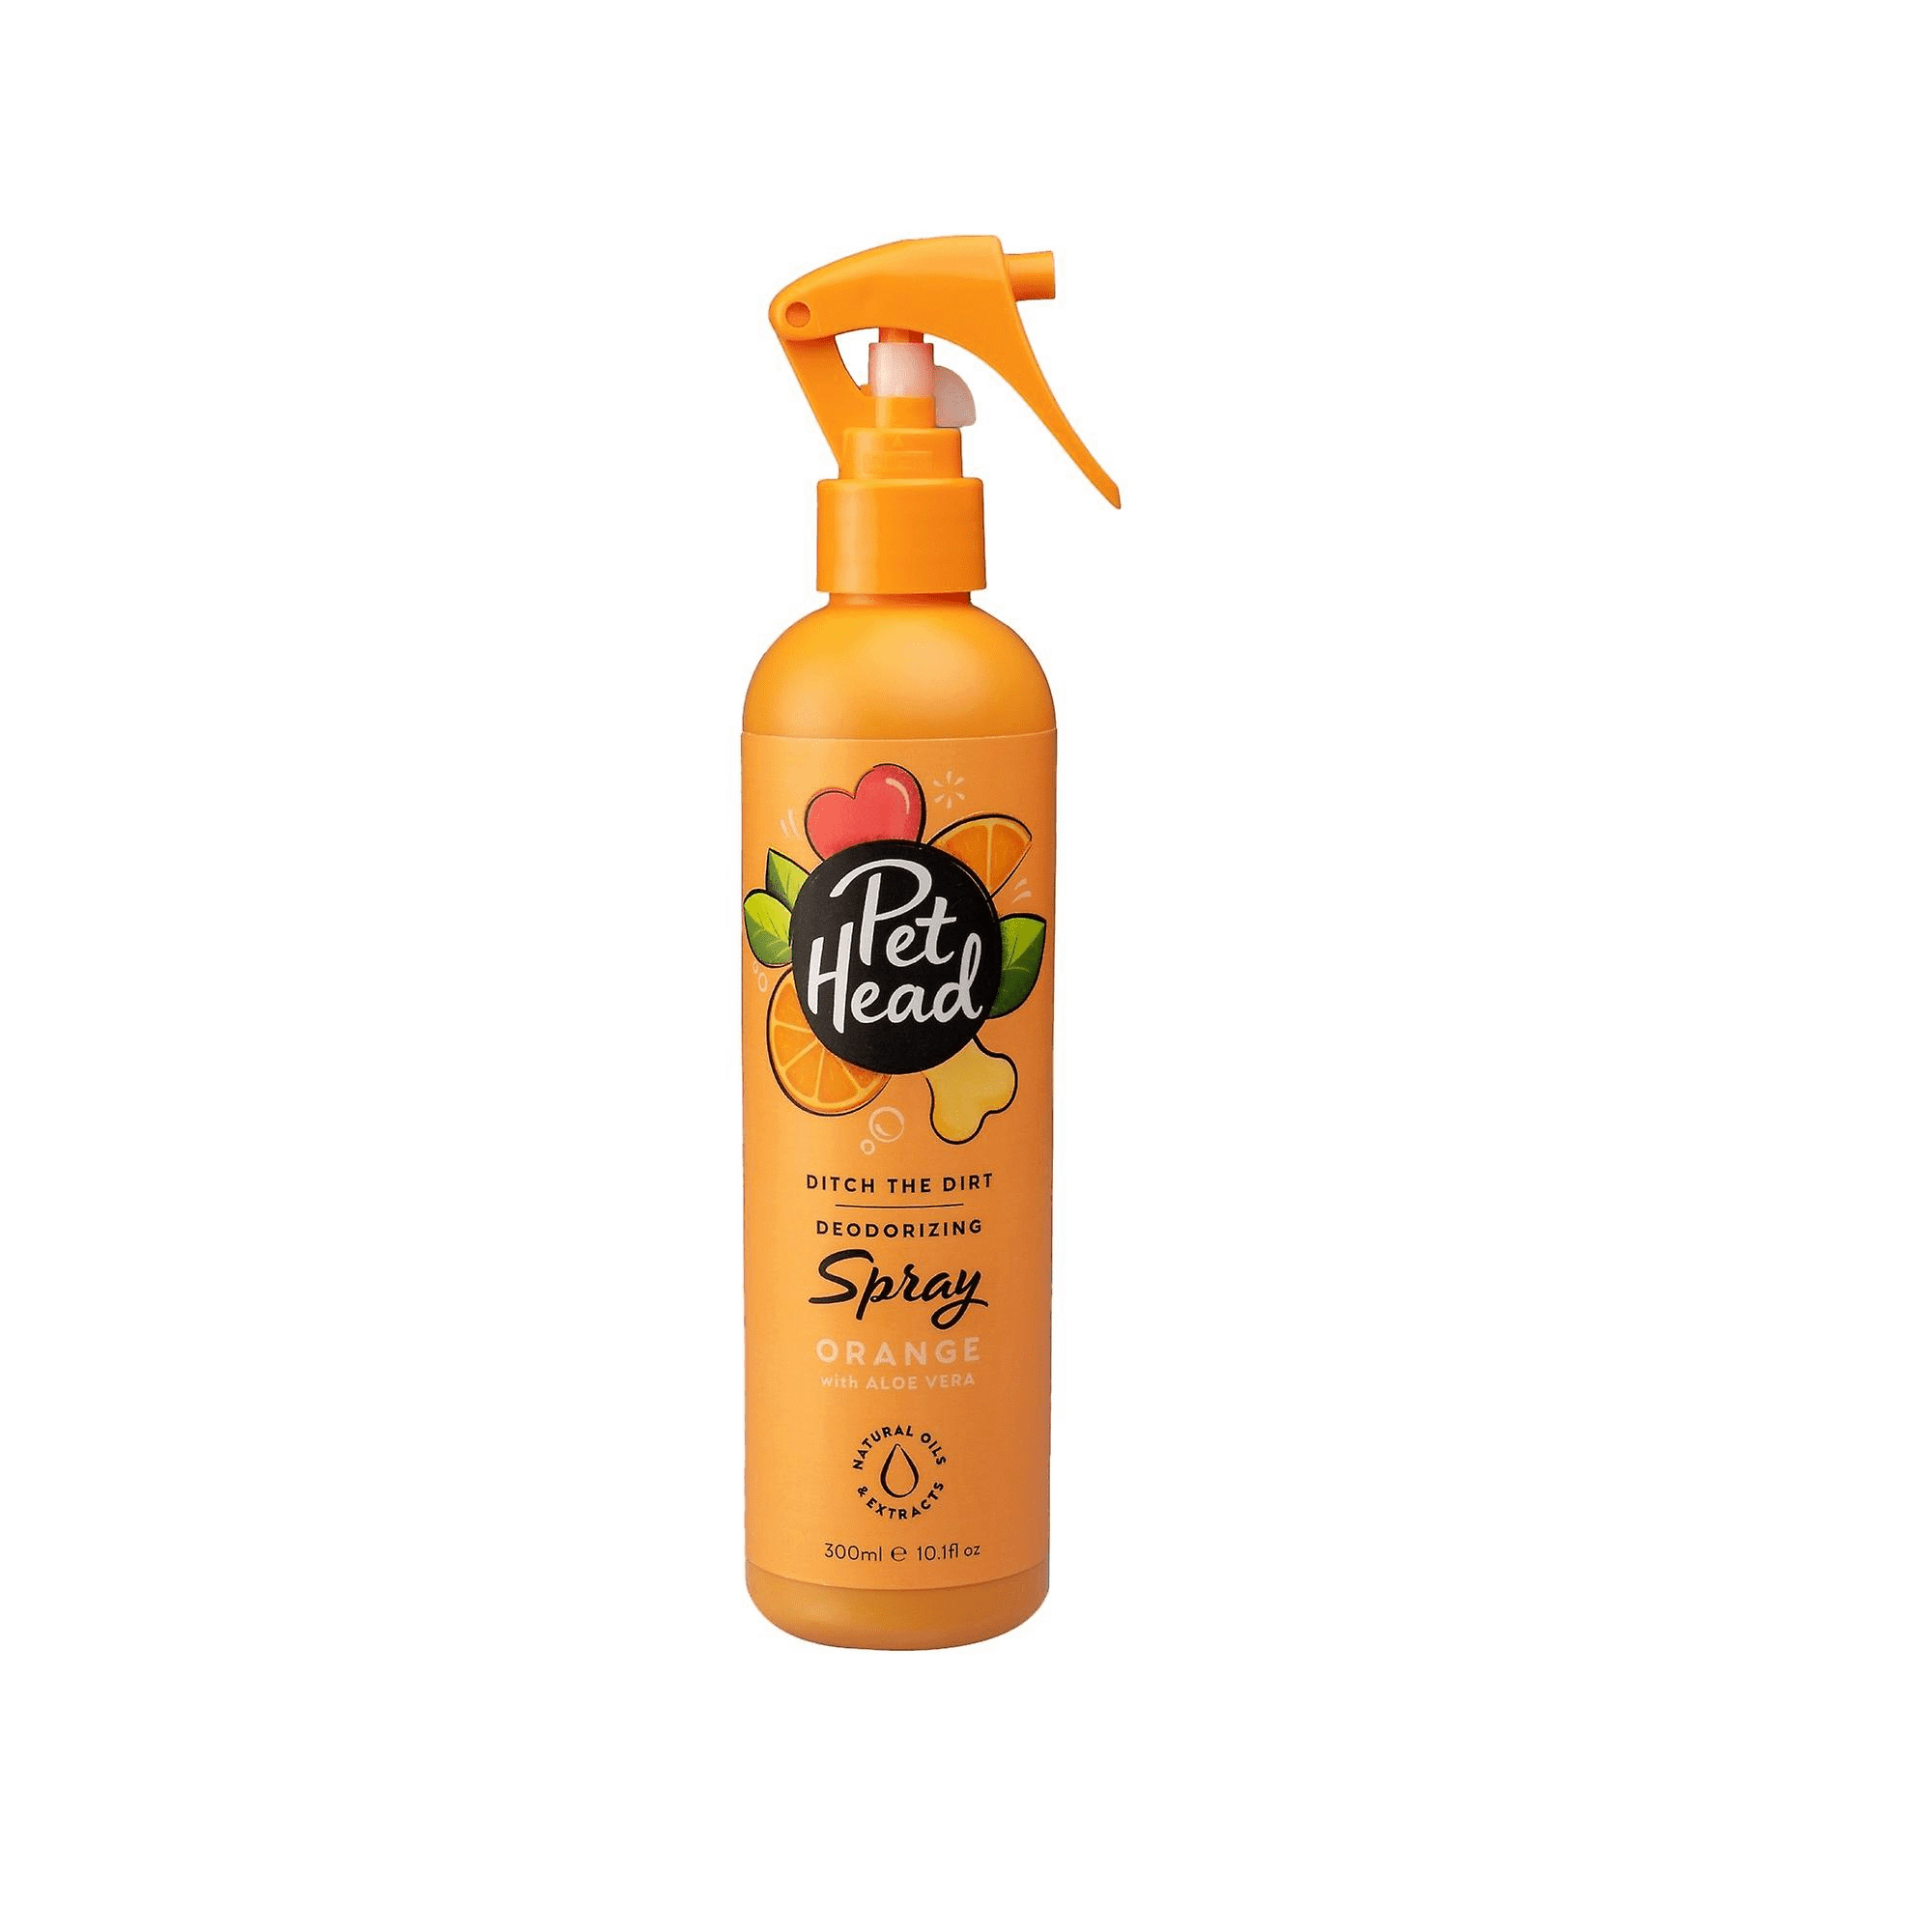 Spray chien - Spécial désodorisant - 300ml - Ditch The Dirt Pet Head